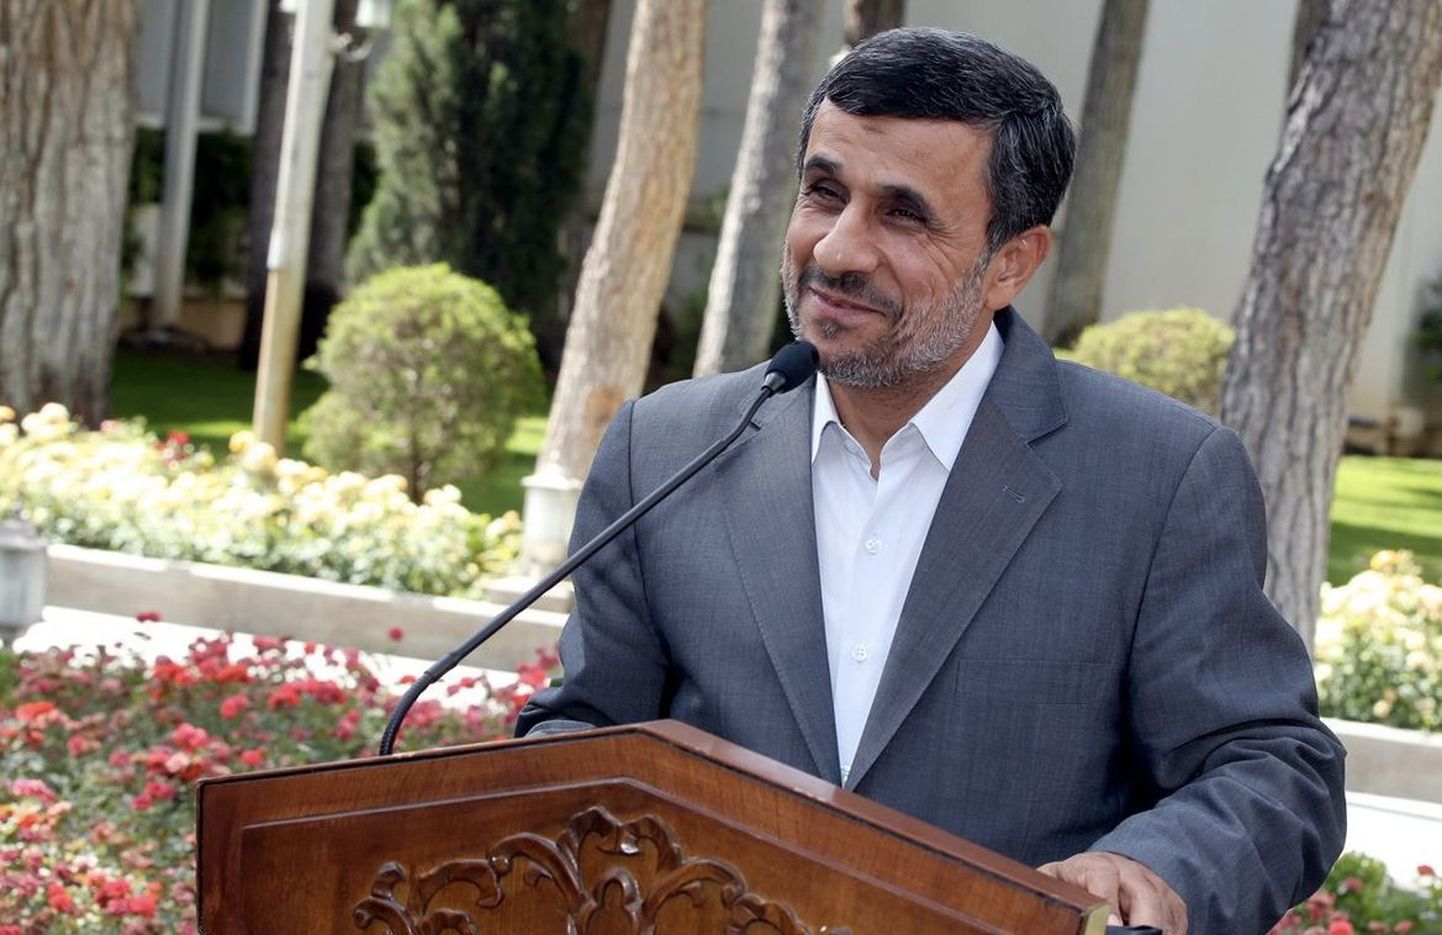 Iraani islamivabariigi president Mahmoud Ahmadinejad